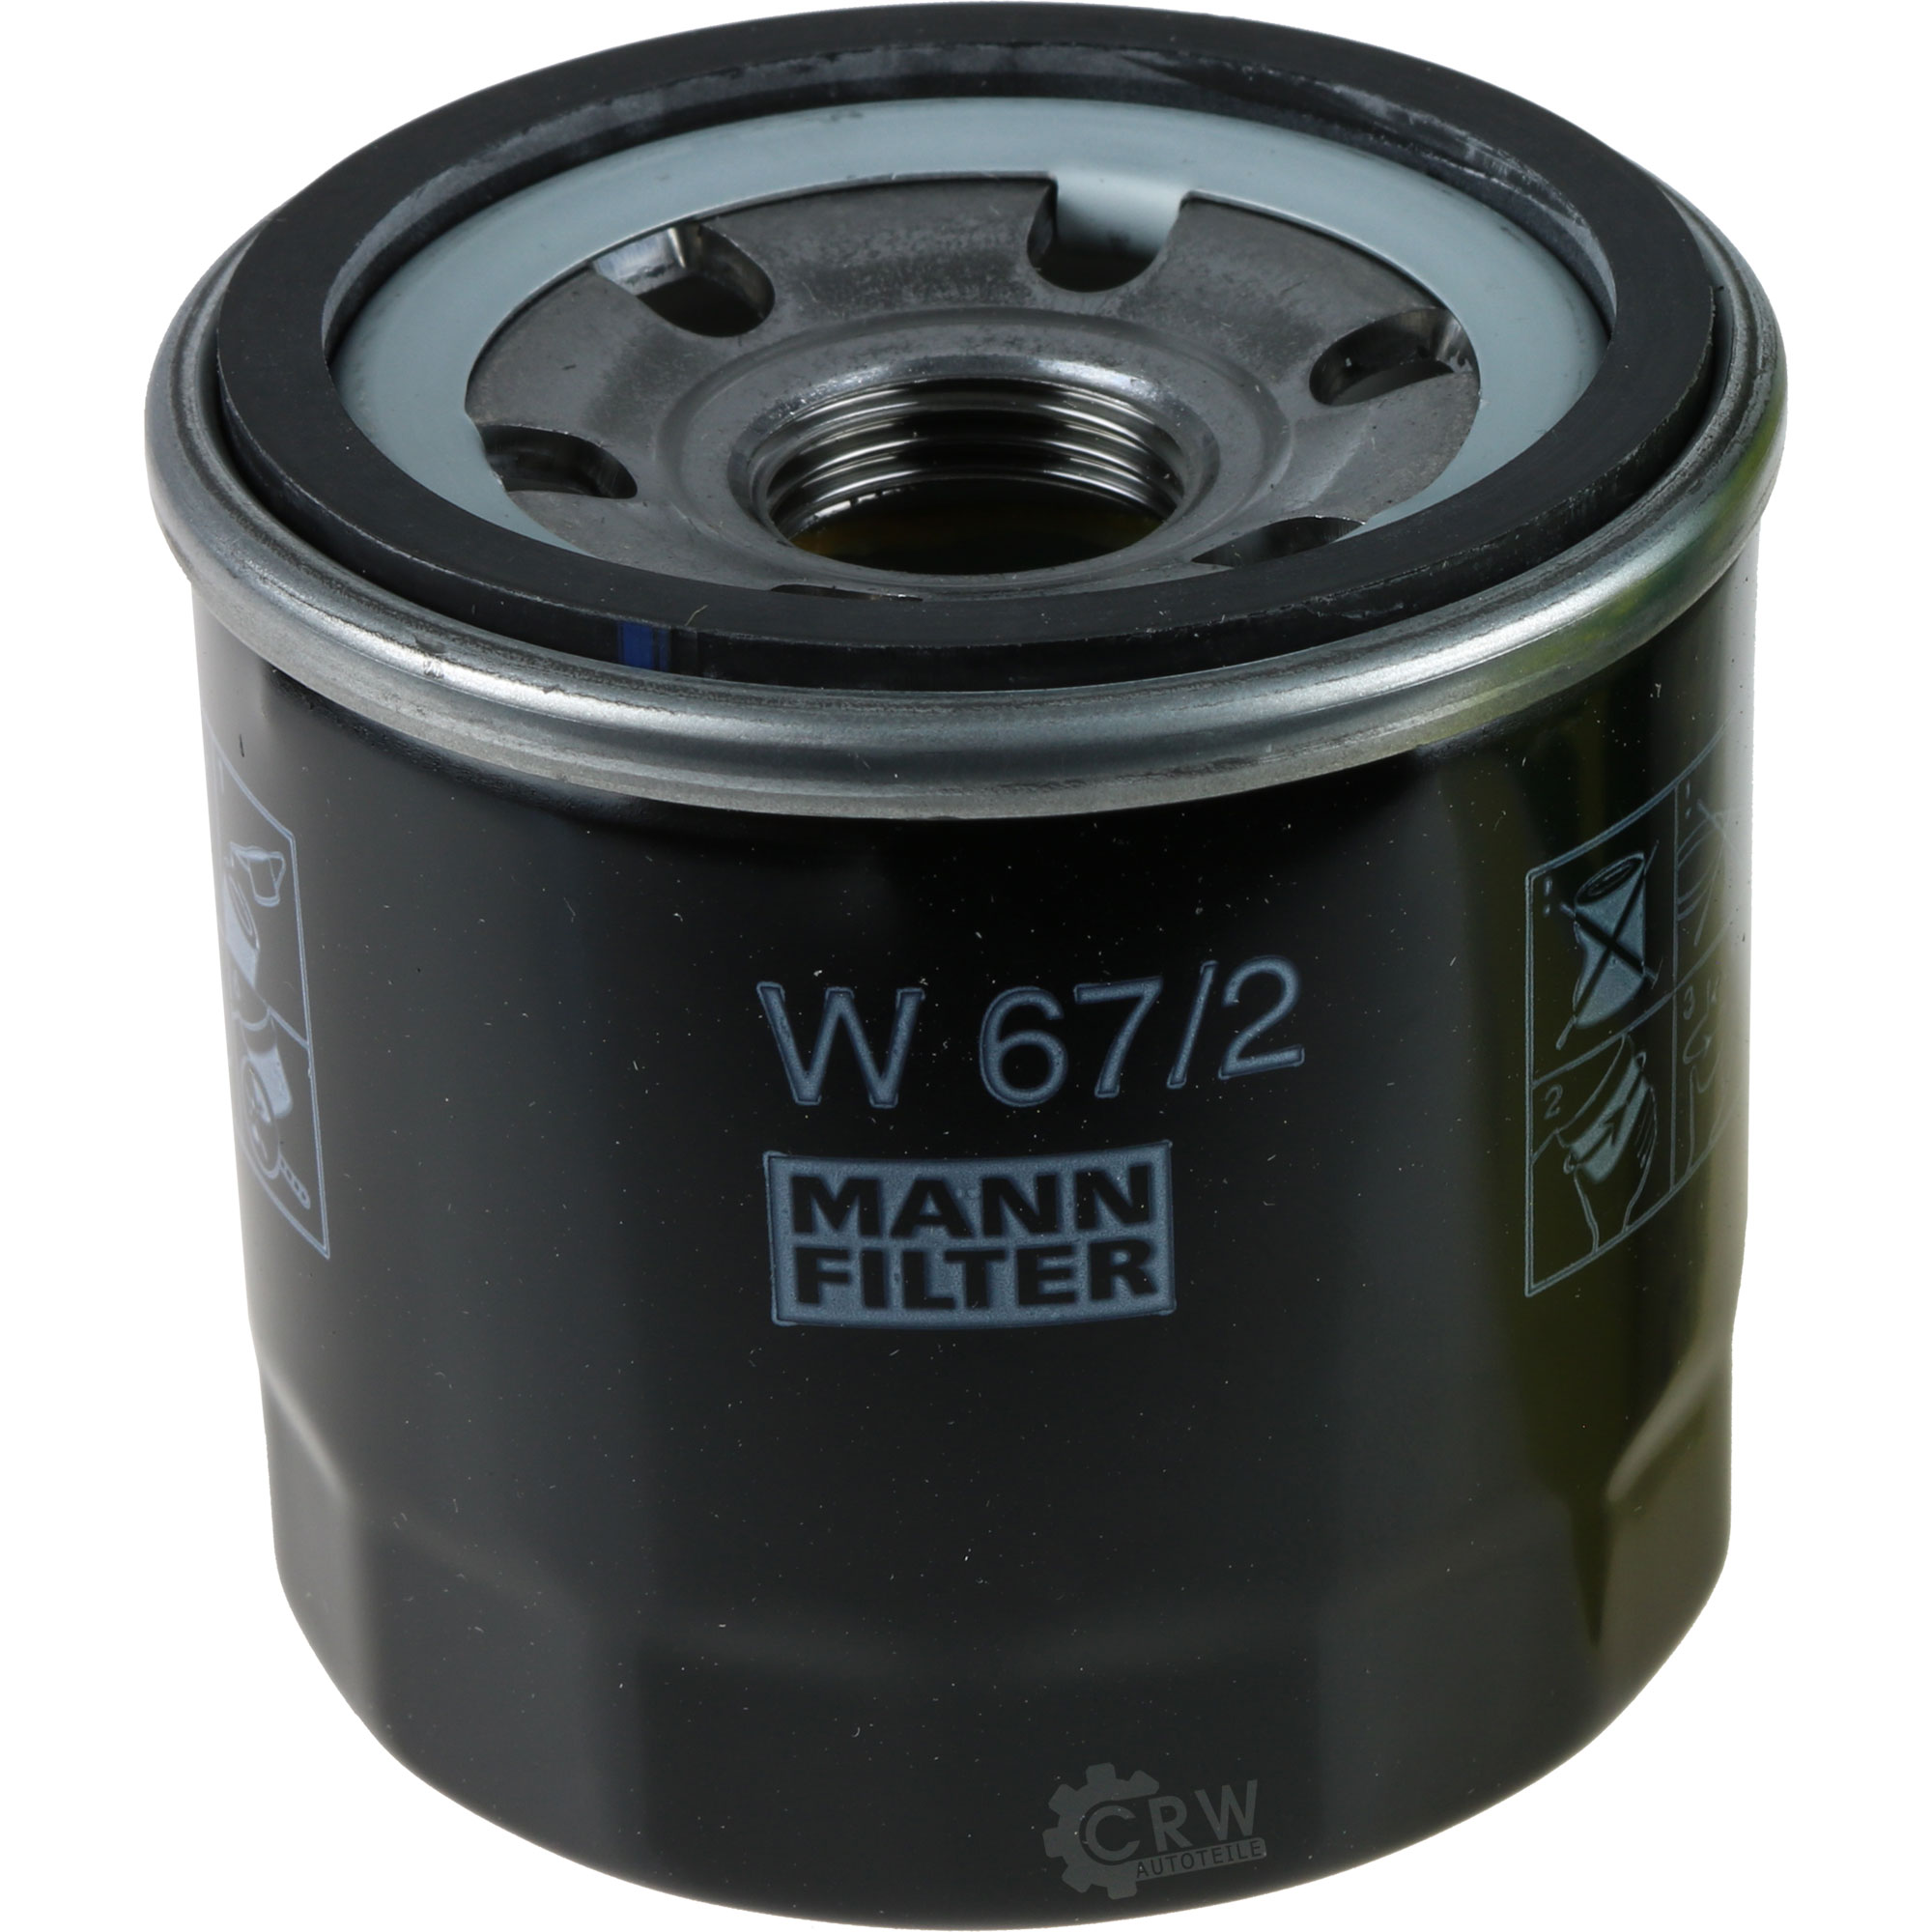 MANN-FILTER Ölfilter W 67/2 Oil Filter